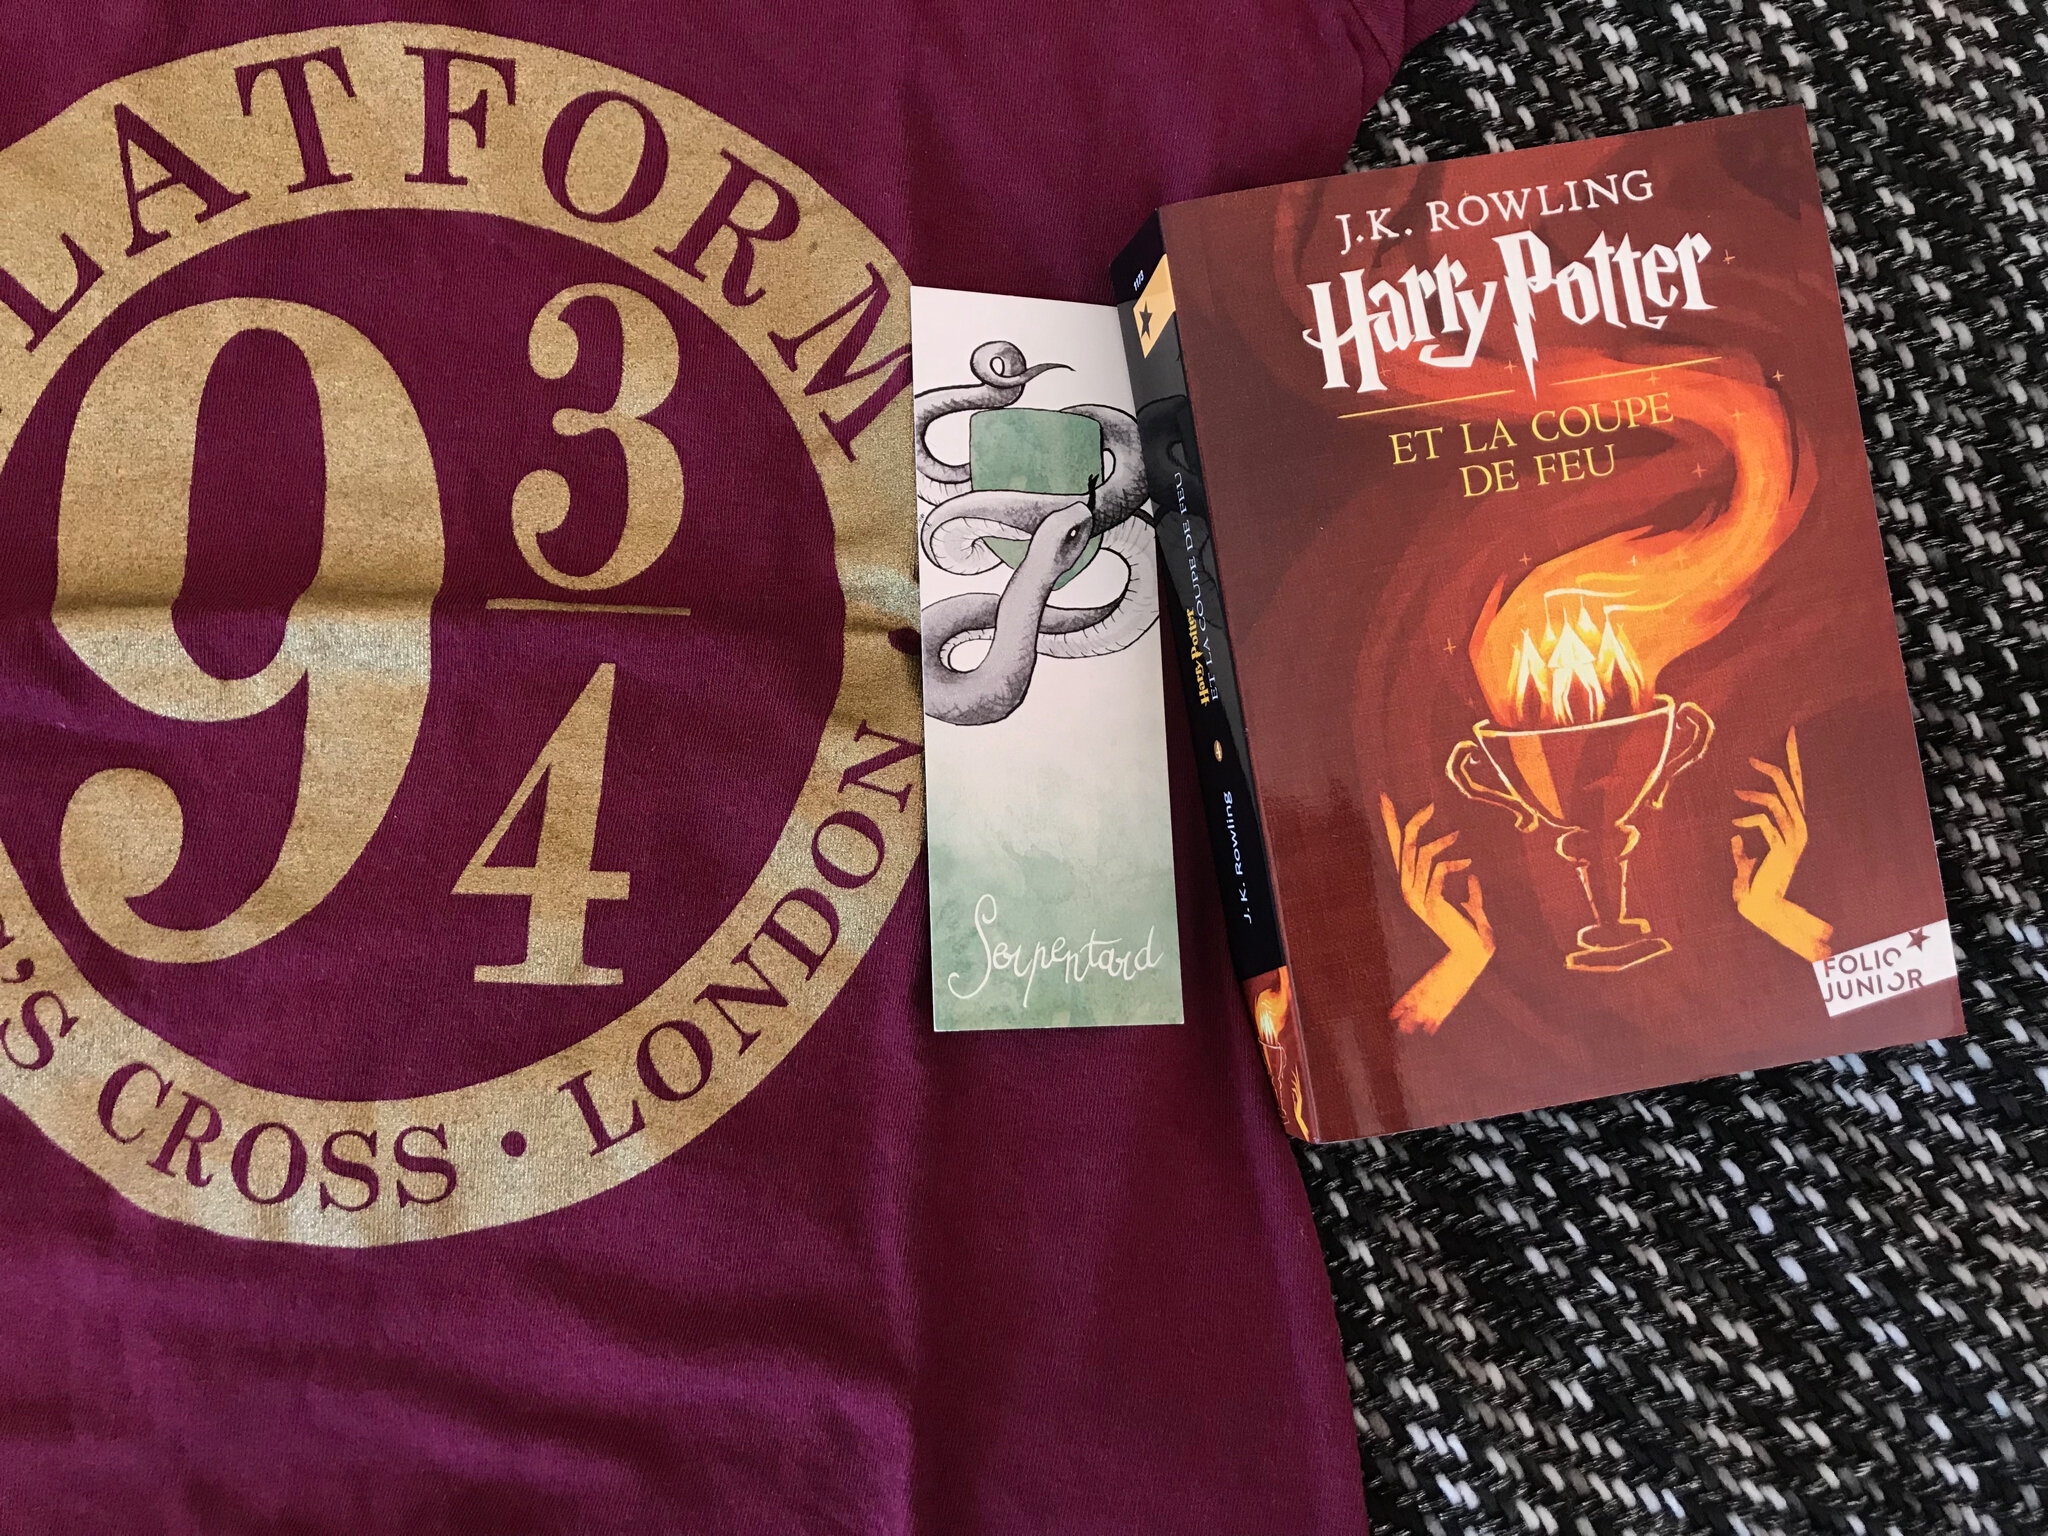 Harry Potter et la Coupe de Feu by J. K. Rowling